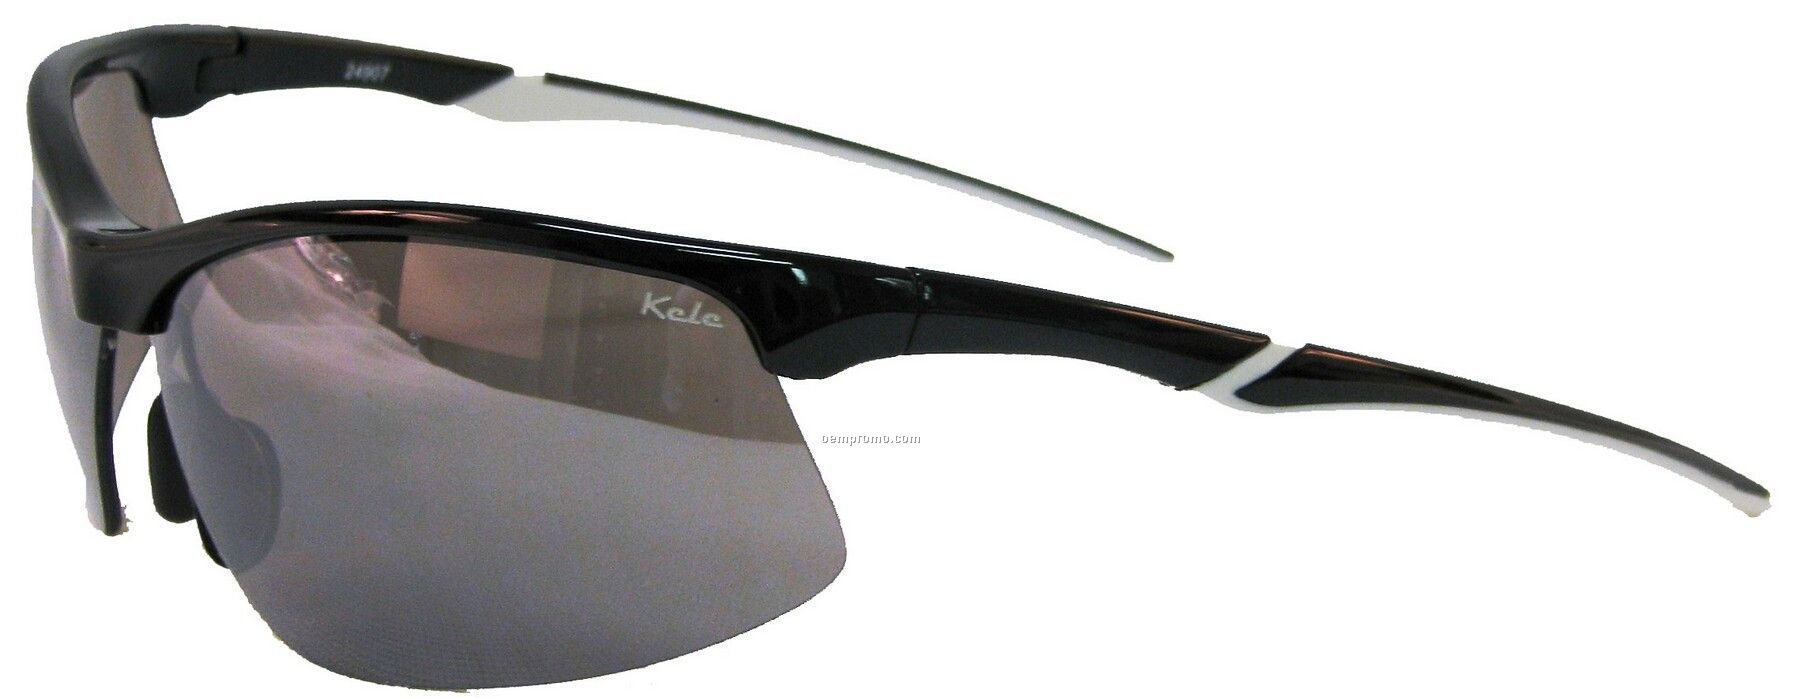 Wave Sunglasses - Gray Lens W/Black & White Frame